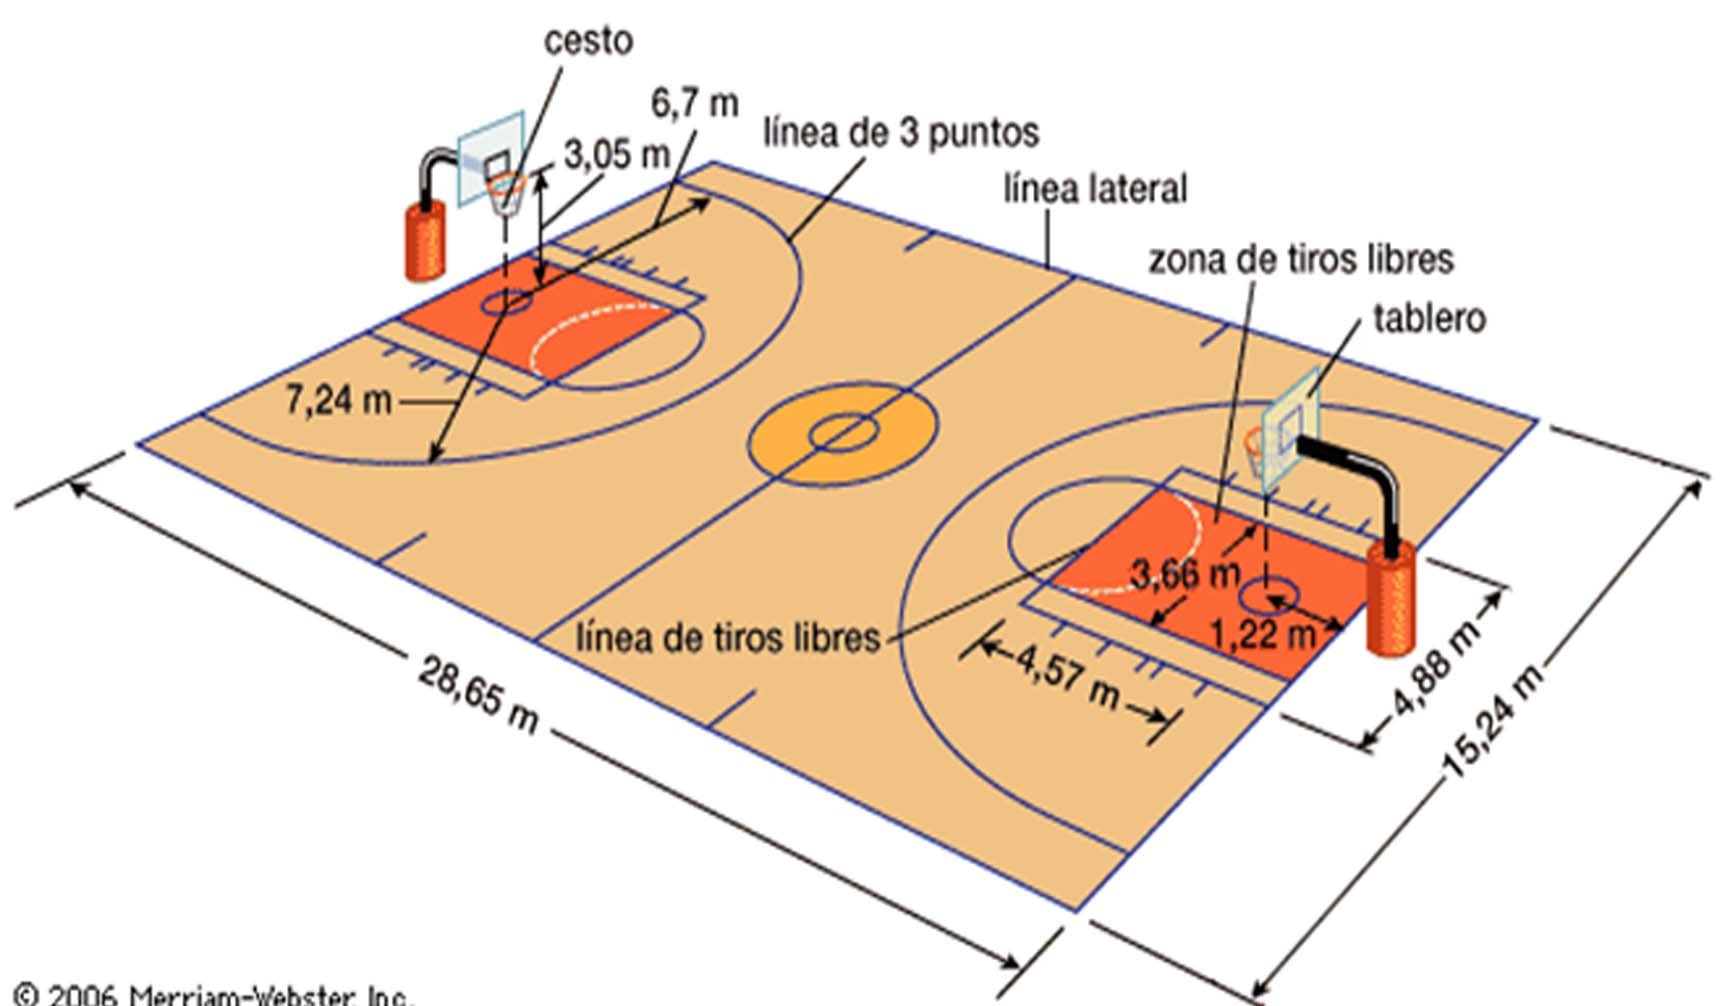 Размеры б б площадки. Баскетбольное поле схема разметки линий. Разметка баскетбольной площадки 25х15. Нарисовать разметку баскетбольной площадки. Размеры баскетбольной площадки.